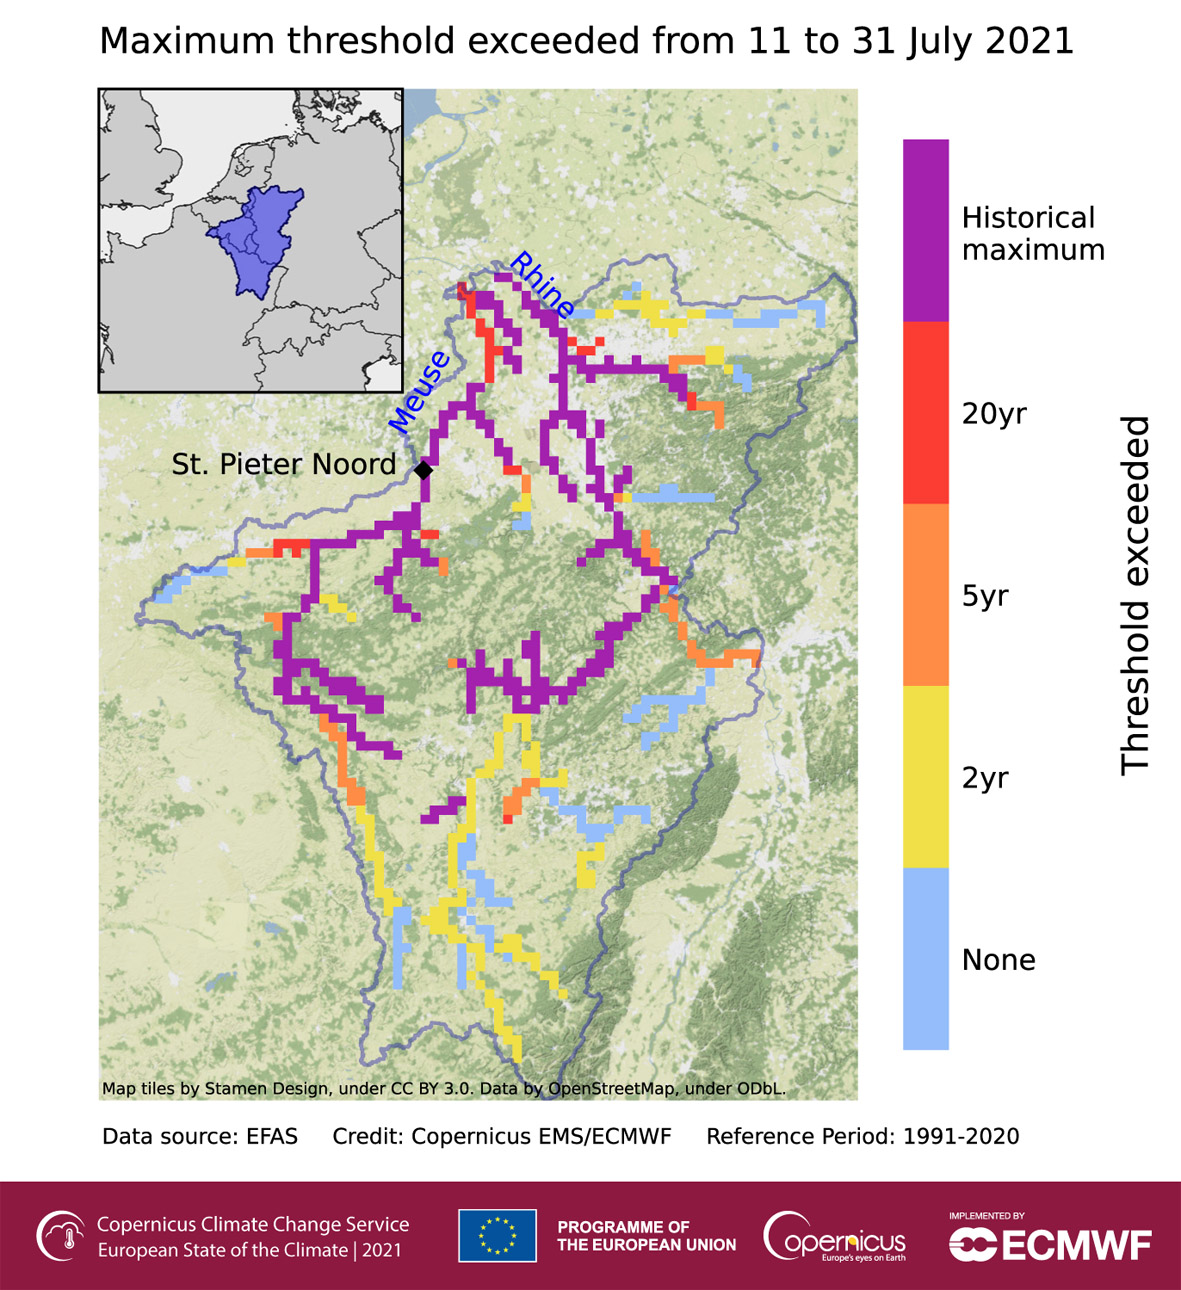 Odcinki sieci rzecznej monitorowane przez EFAS, pokazujące gdzie 6-godzinny uśredniony symulowany przepływ rzeczny w okresie od 11 do 31 lipca 2021 roku przekroczył prawdopodobieństwo wystąpienia podobnego zdarzenia w ciągu 2 (żółty), 5 (pomarańczowy) i 20 lat (czerwony). Kolorem fioletowym zaznaczono rzeki gdzie wystąpił rekordowy przepływ od 1991 roku.